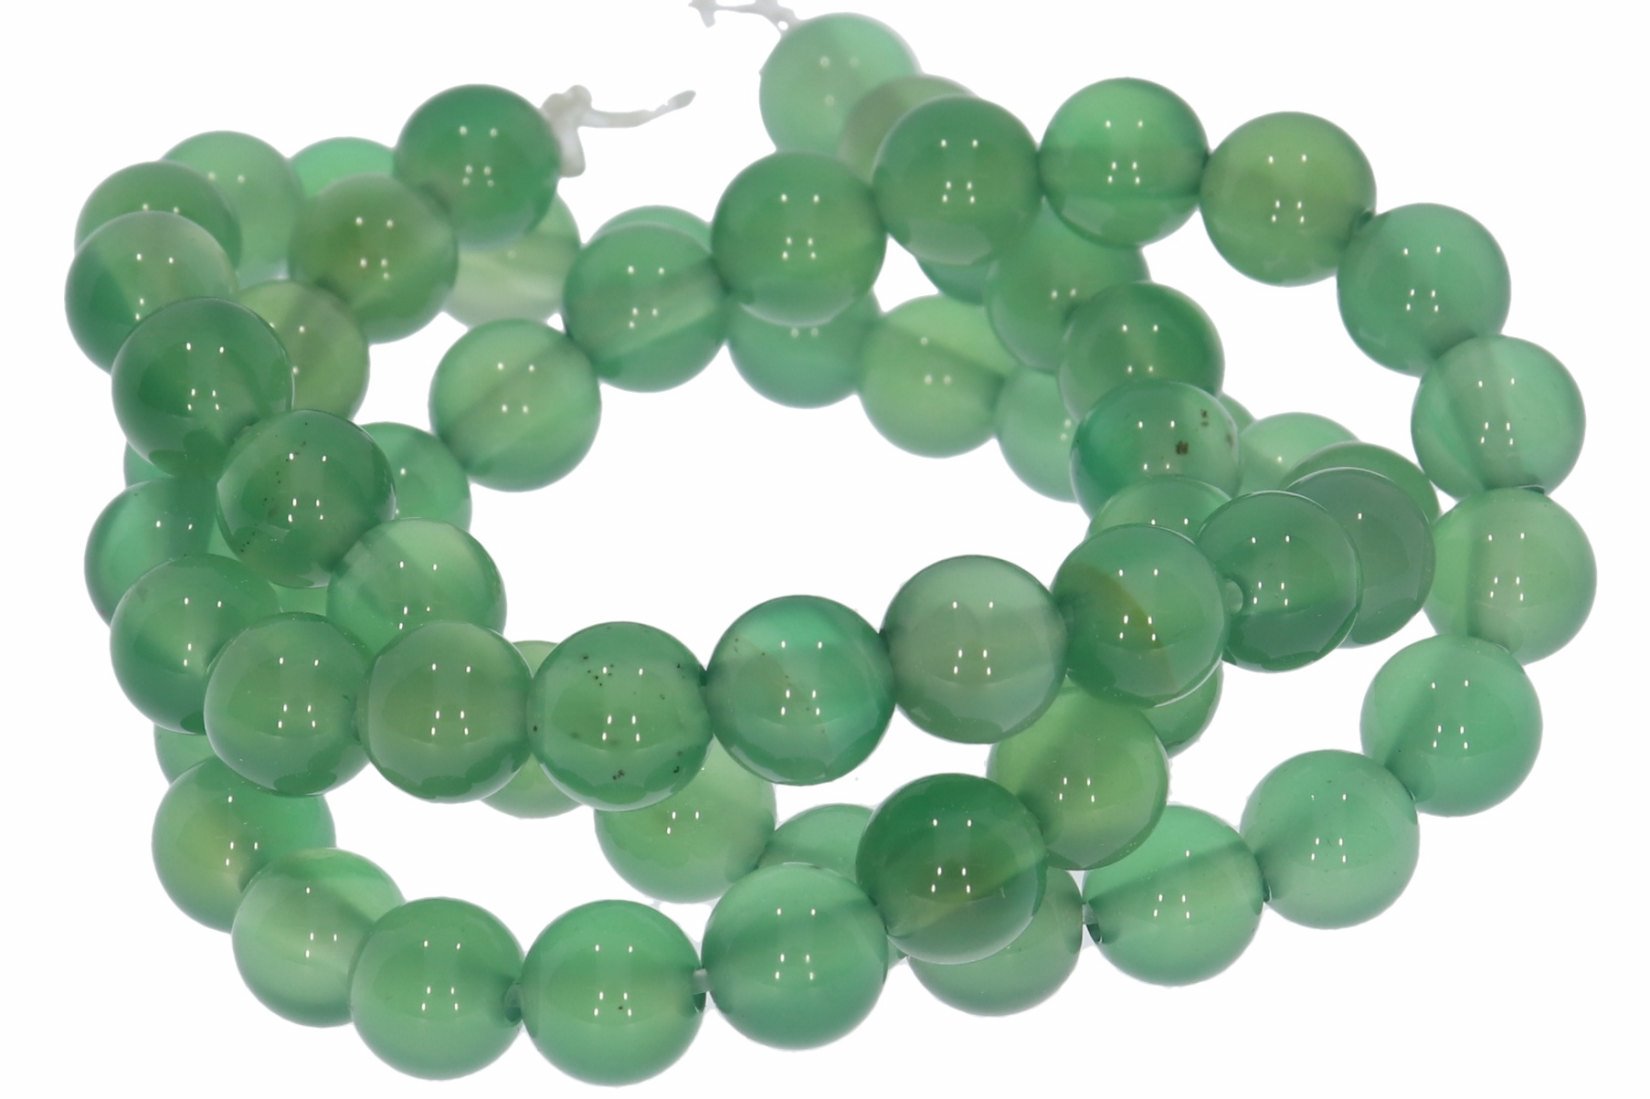 6S134 Achat grün einfarbig  6mm Strang Mineralien Edelstein